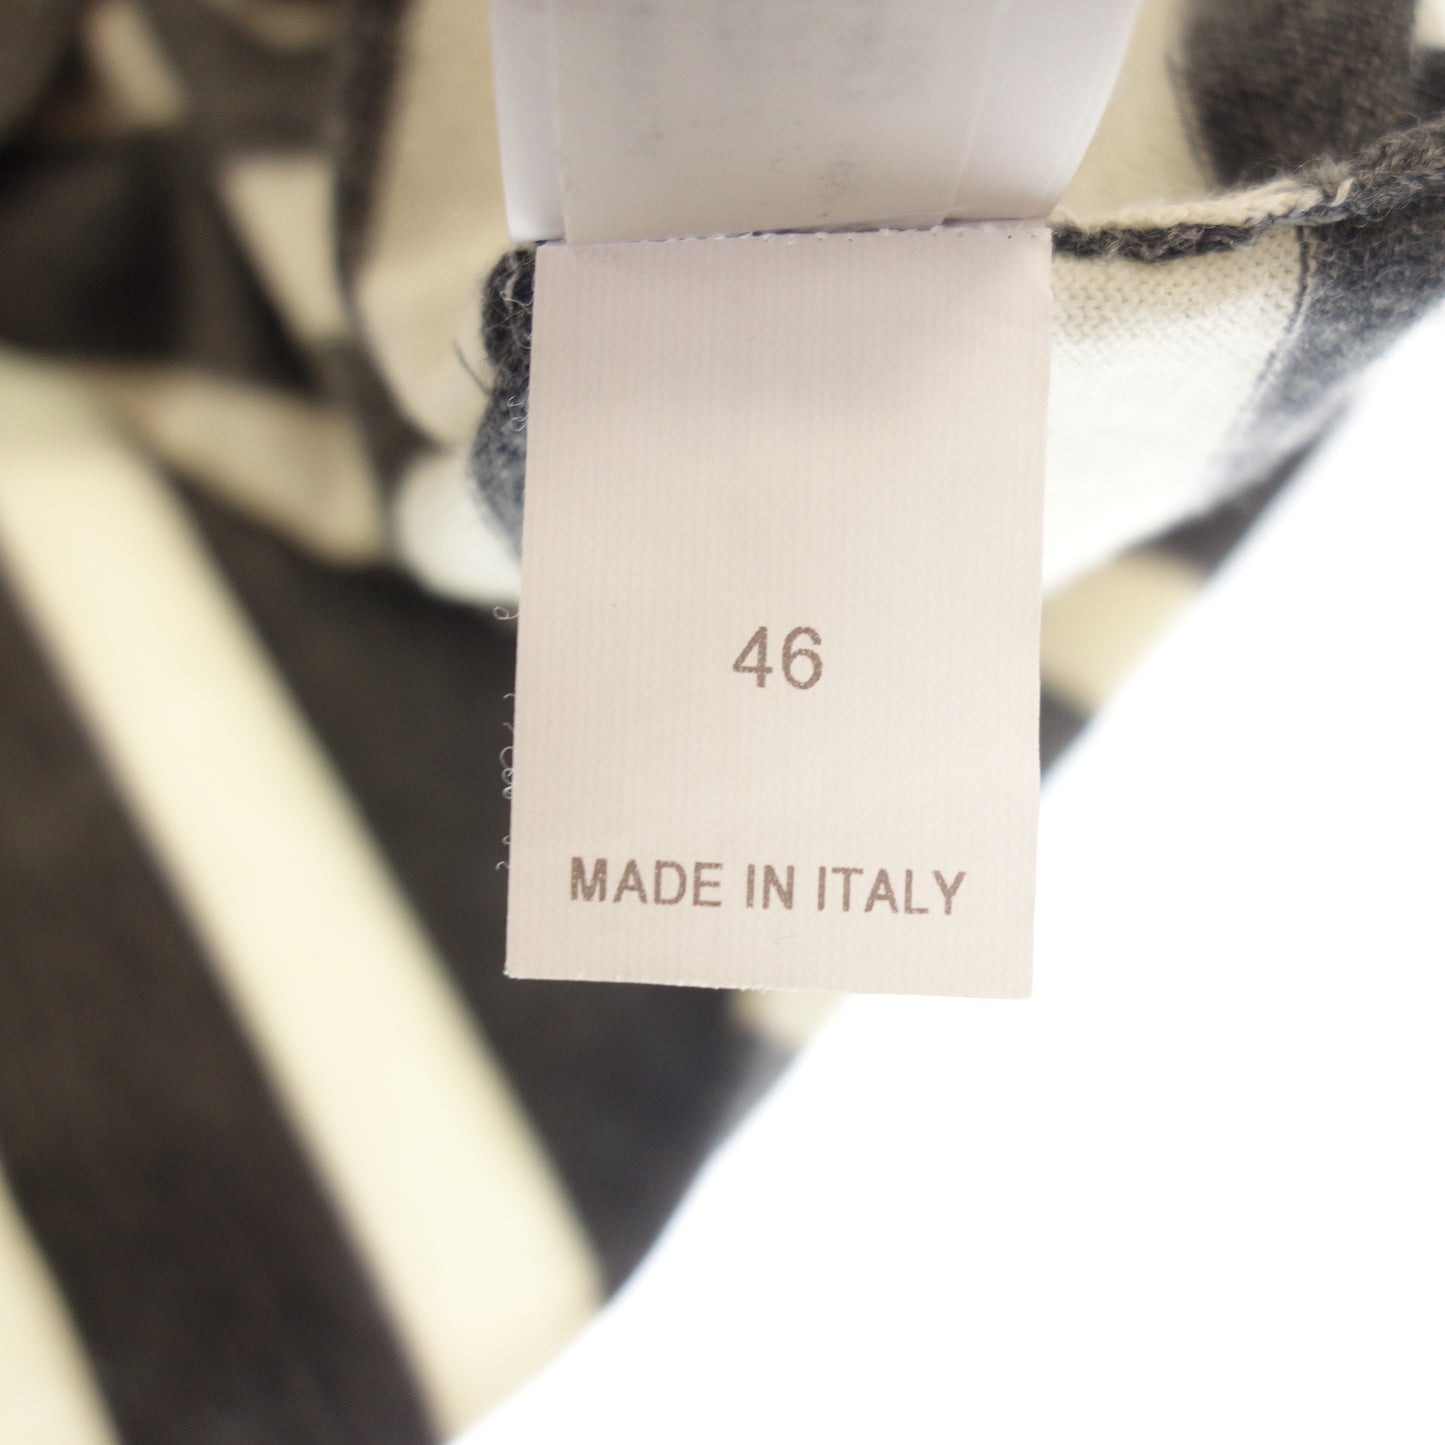 状况良好◆Brunello Cucinelli 针织毛衣镶边羊绒混纺男士灰色 x 白色尺码 46 BRUNELLO CUCINELLI [AFB16] 